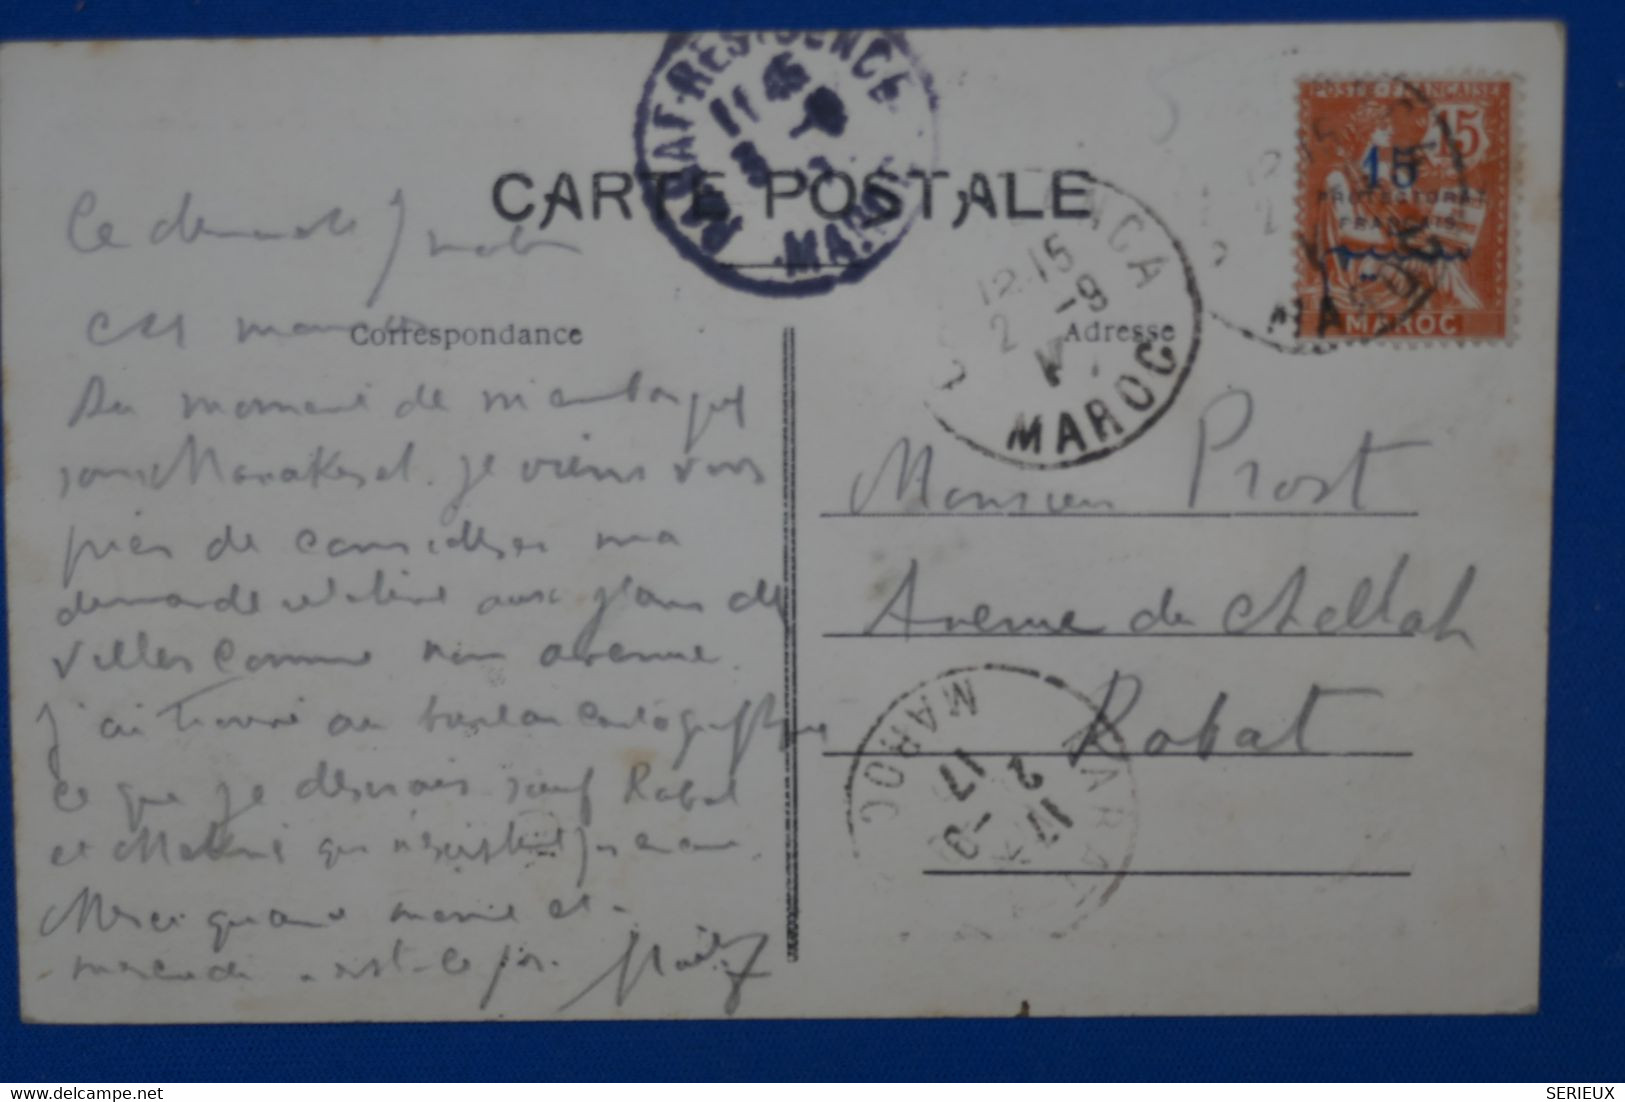 T26 MAROC BELLE  CARTE 1917 RABAT + SURCHARGE + AFFRANCHISSEMENT   INTERESSANT - Storia Postale